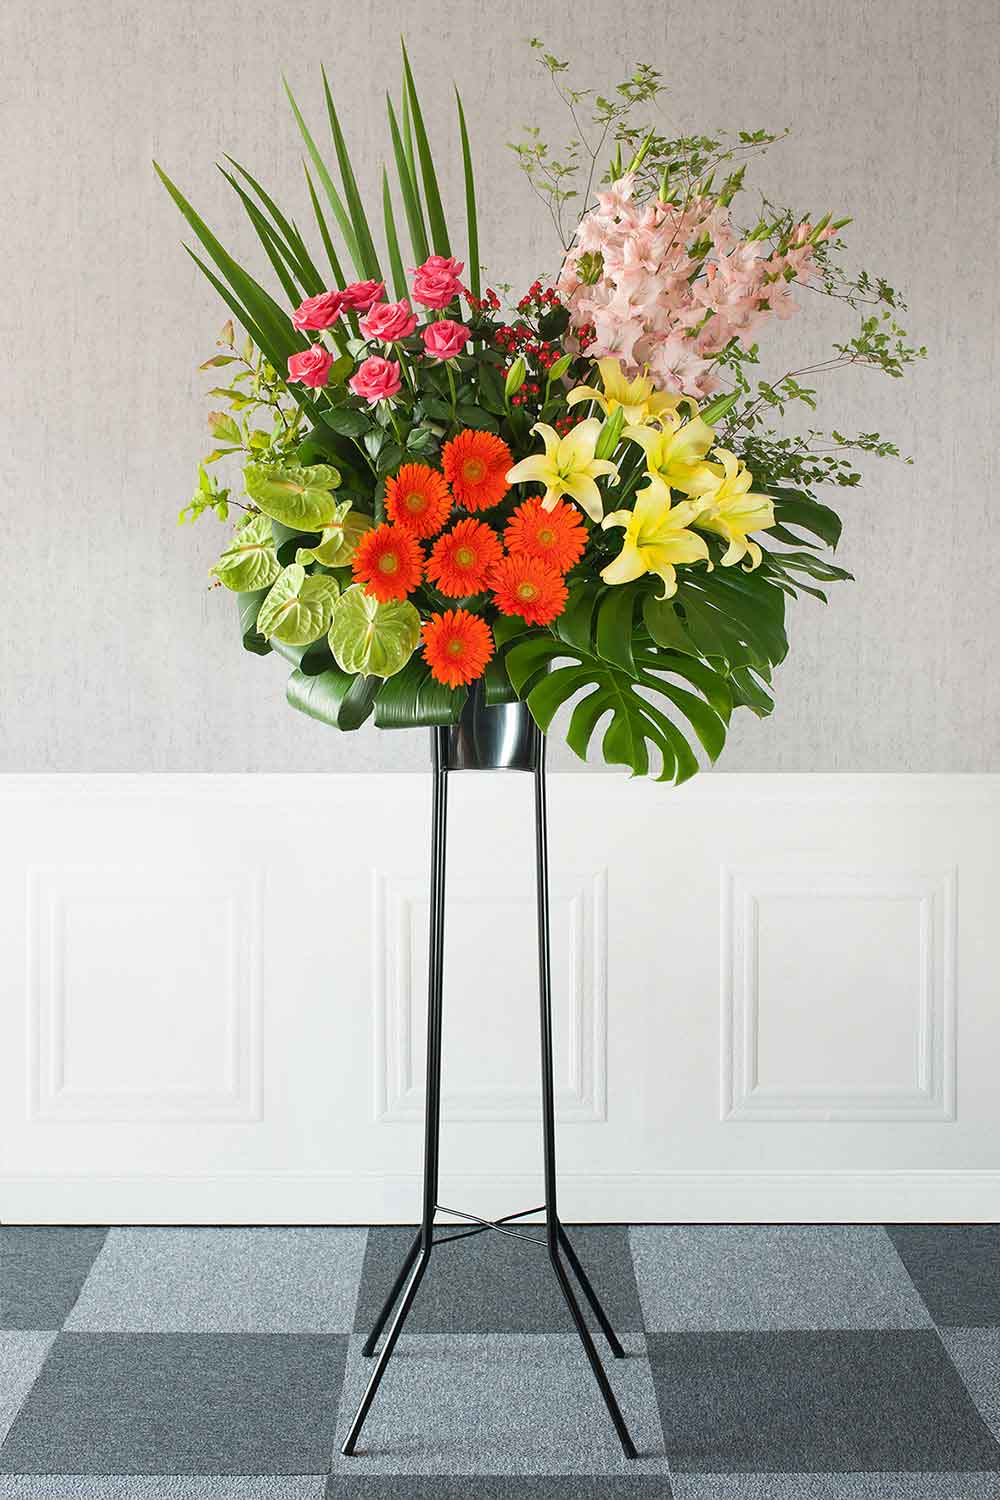 【スタンド花】1段スタンド スタイリッシュミックス(季節のお花でお任せ) Mサイズ 高さ約190cm